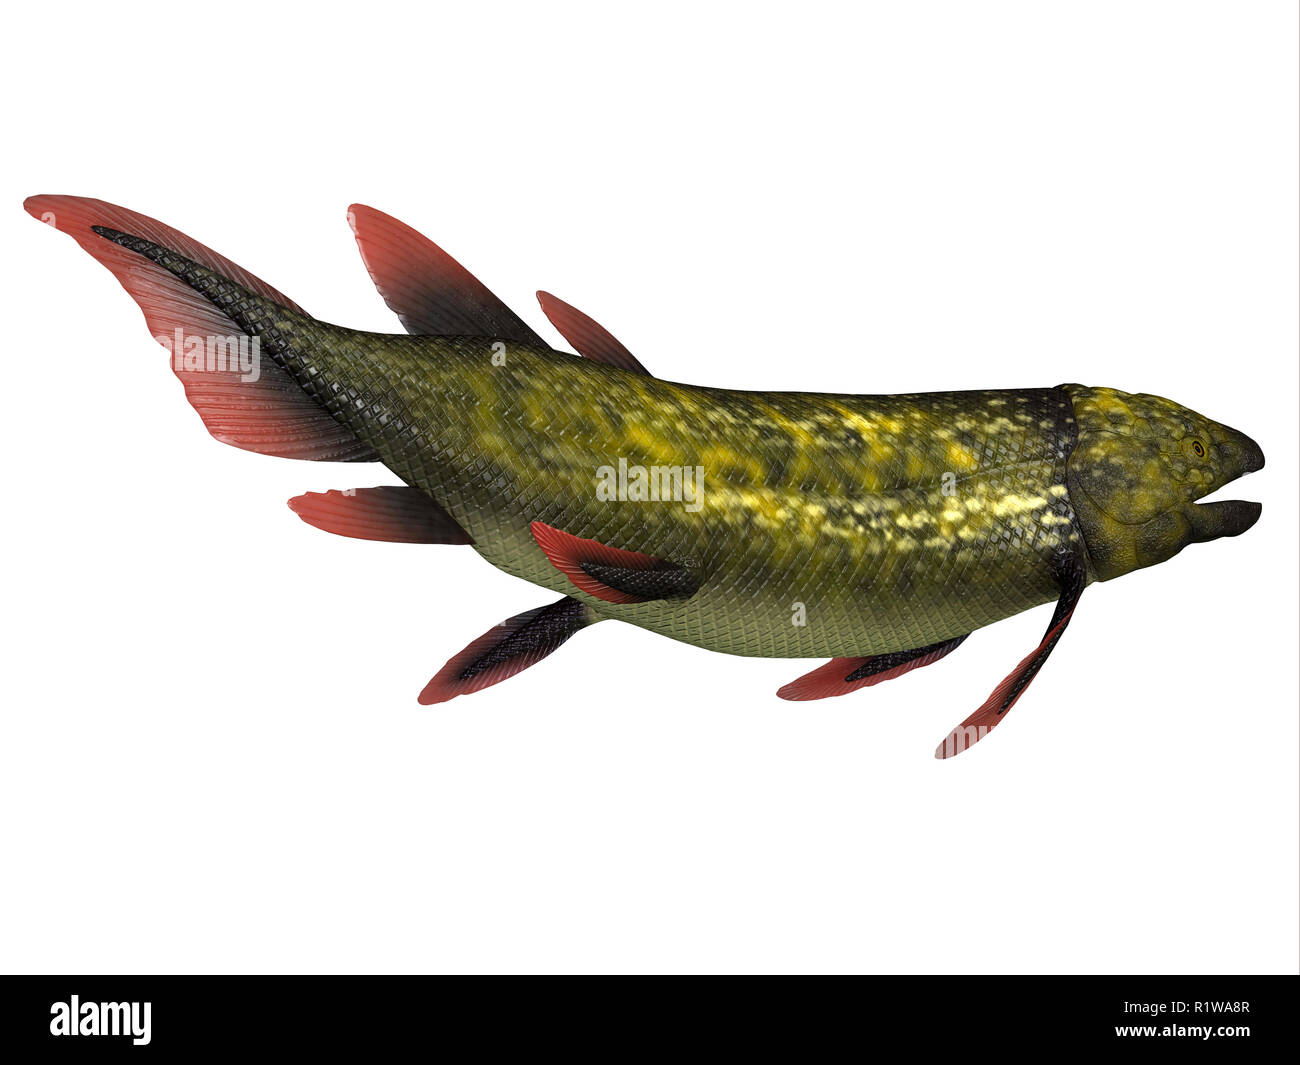 Dipterus war ein Süßwasserfischarten, die in den Sümpfen lebte und bayous von Europa und Nordamerika Während des Devon und Karbon Perioden. Stockfoto